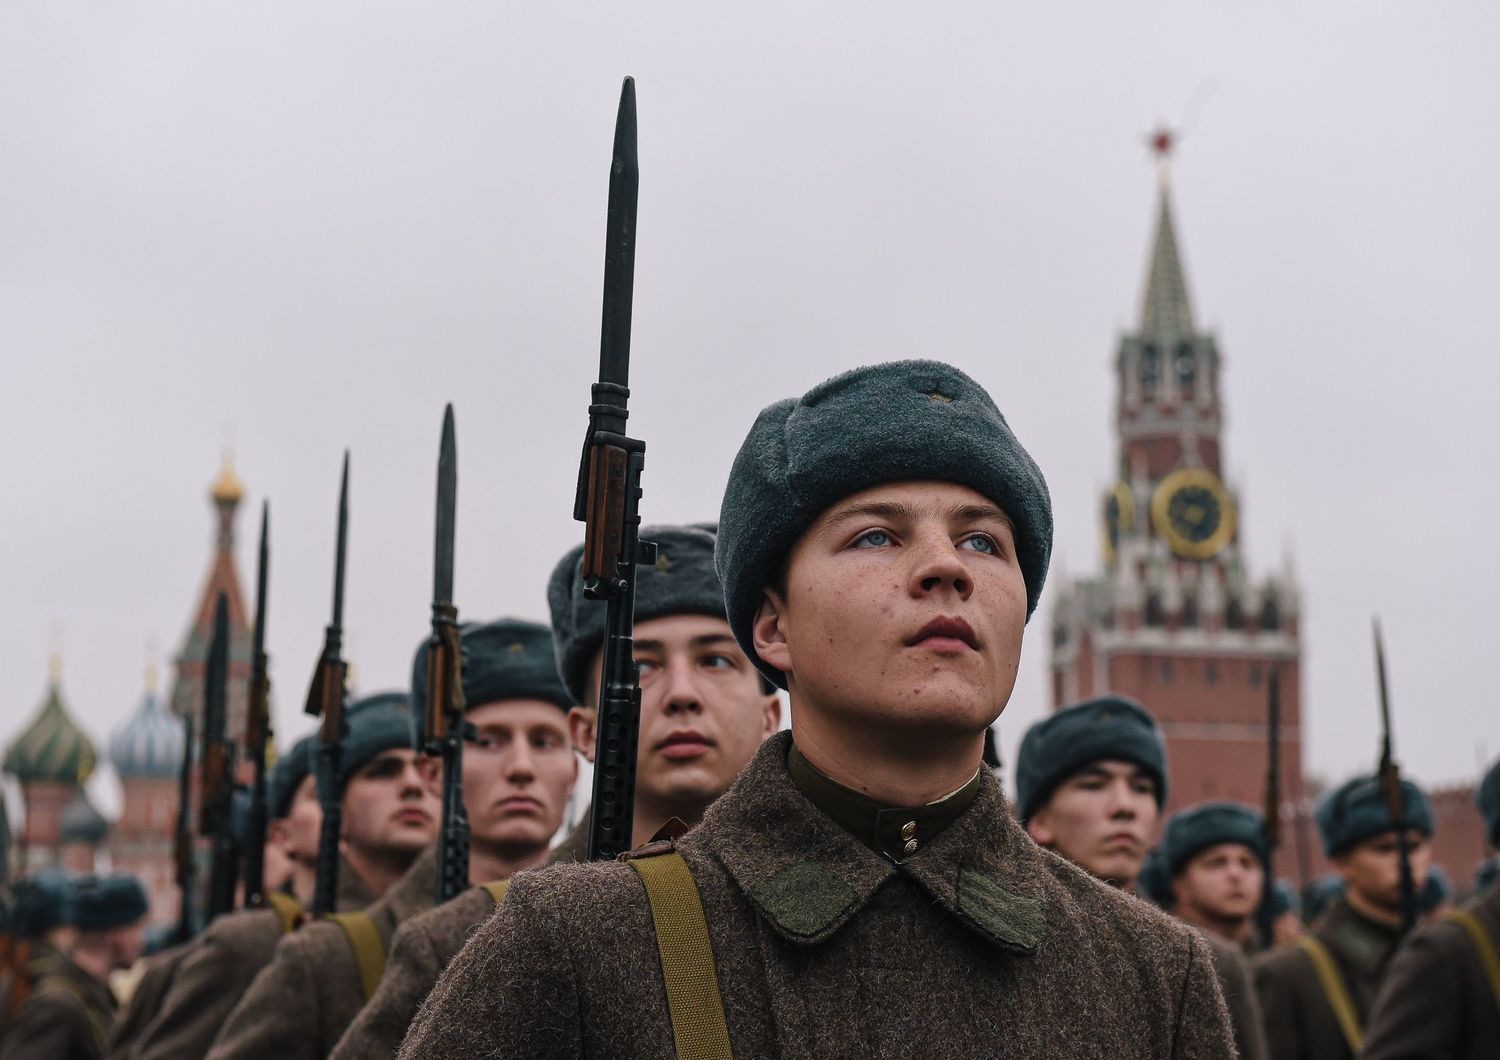 Soldati russi in divise dell'epoca della Seconda Guerra Mondiale